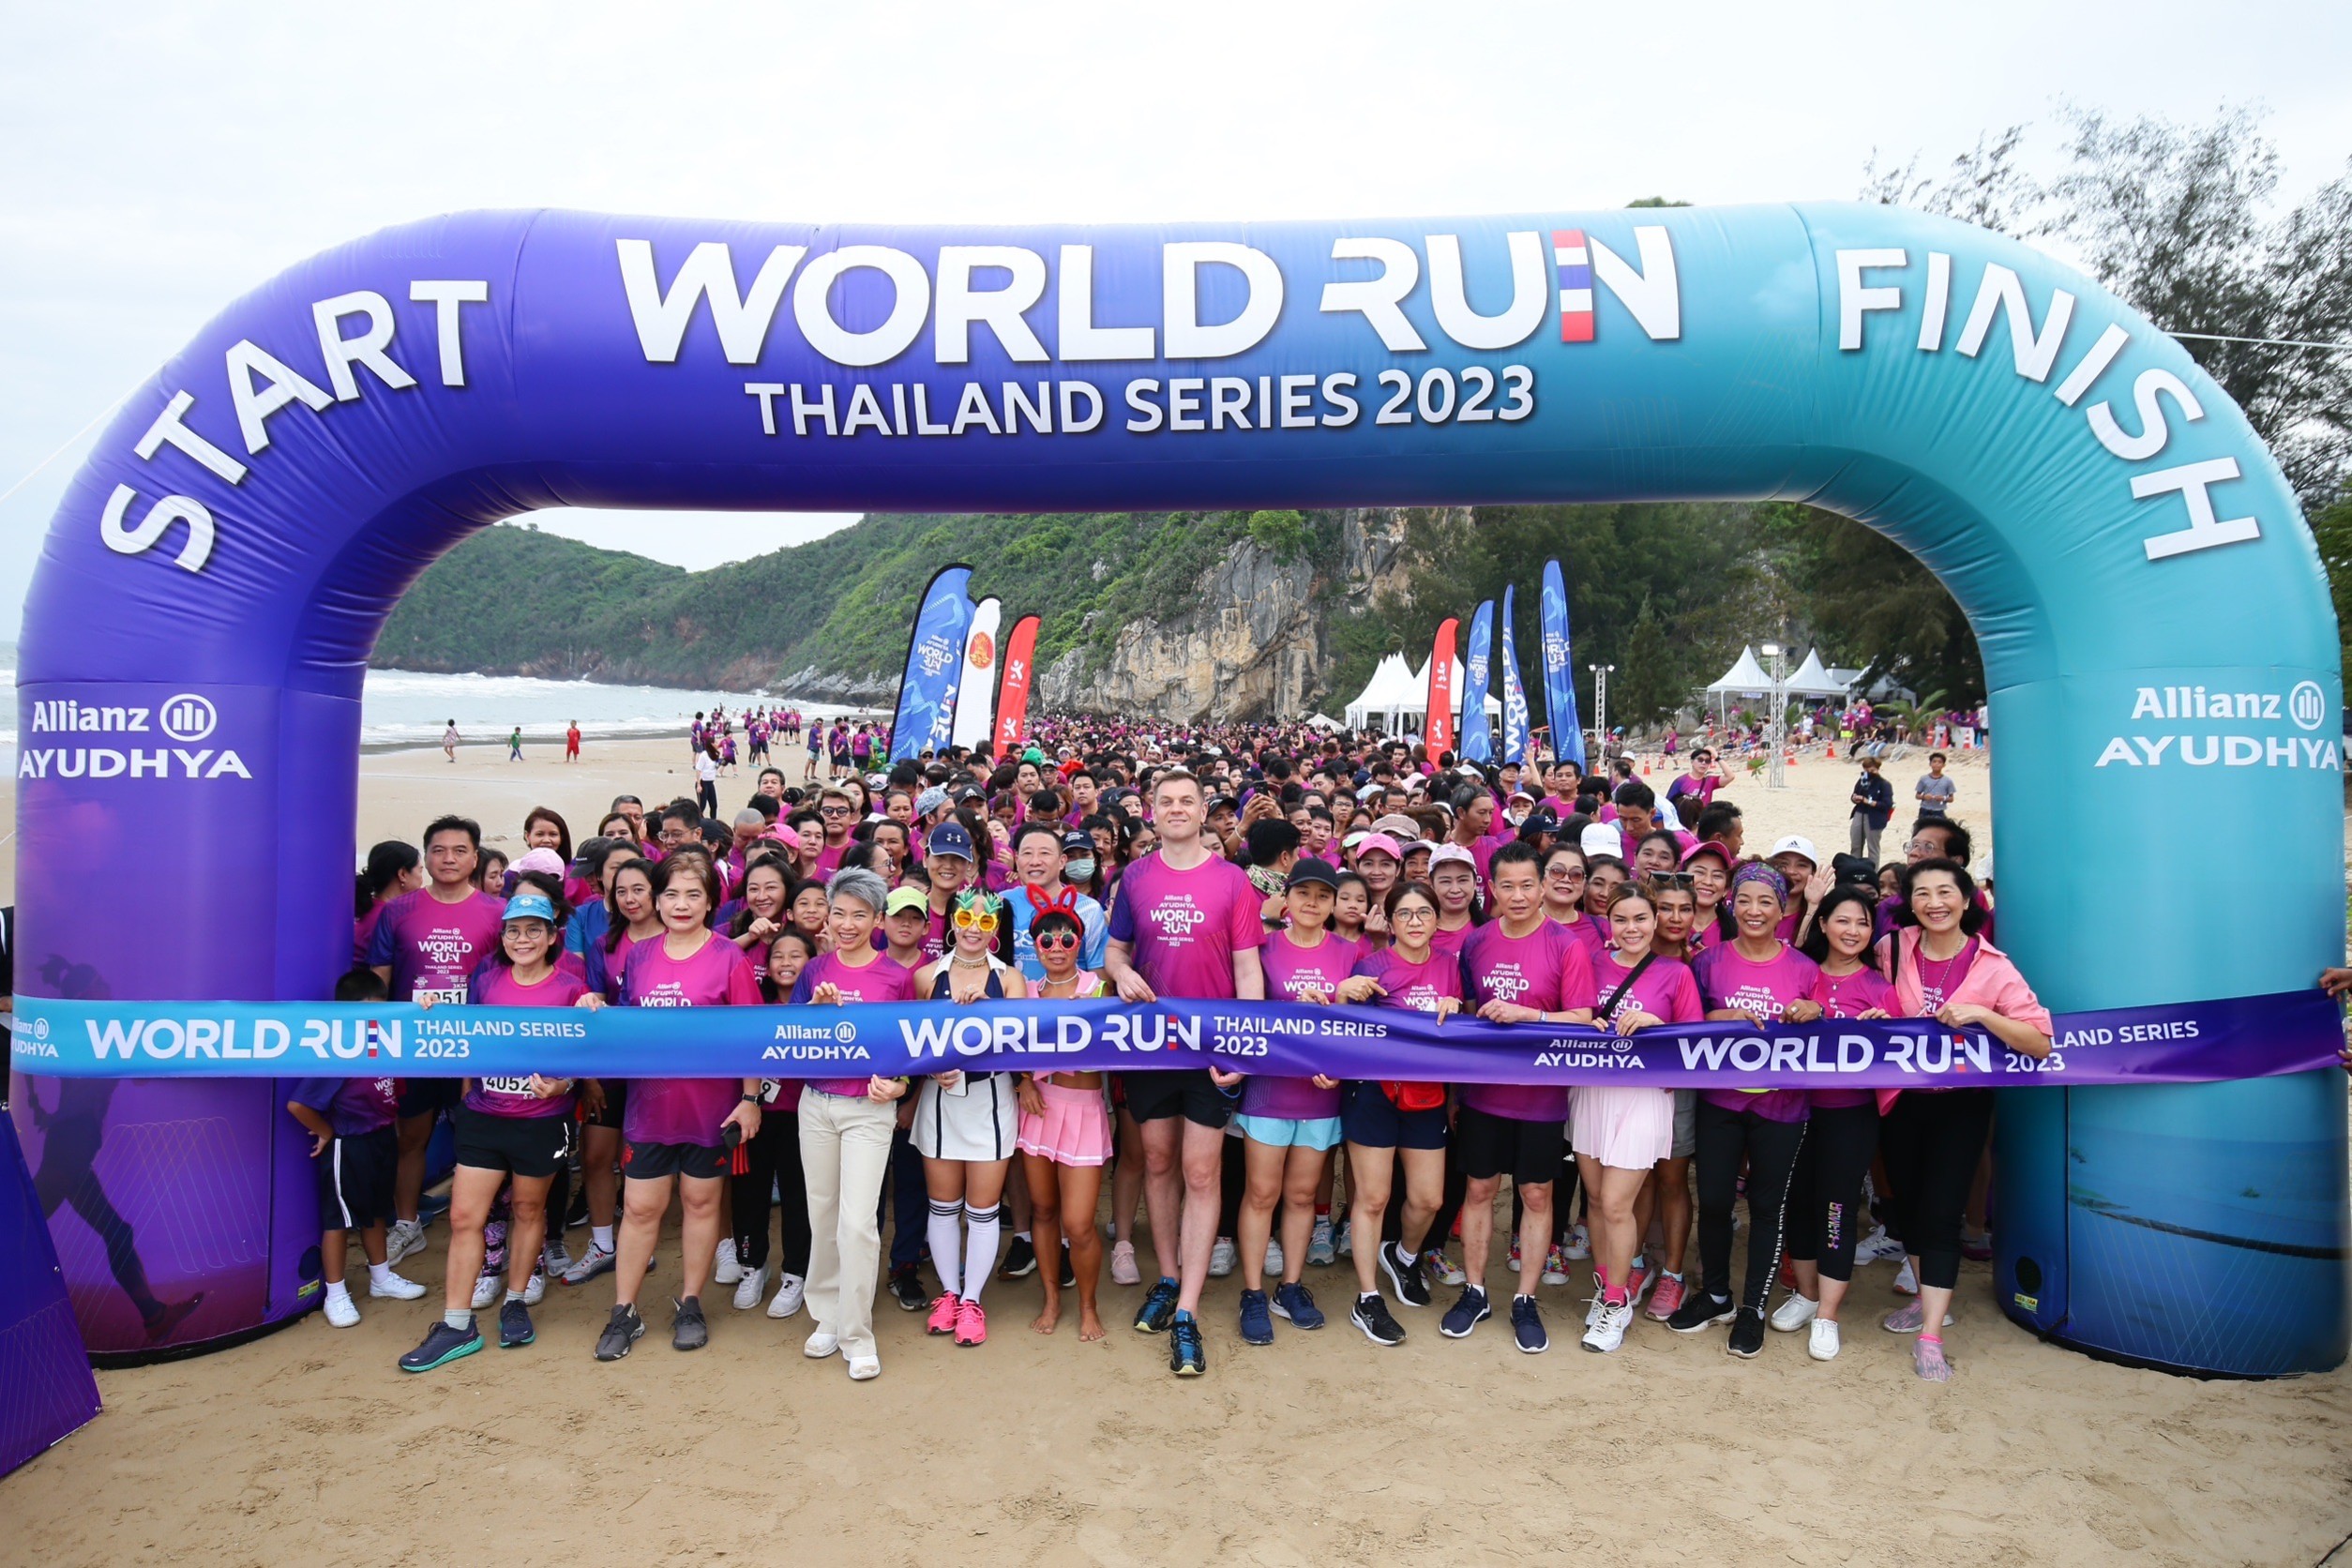 อลิอันซ์ อยุธยา จัดงาน Allianz Ayudhya World Run Thailand Series 2023 งานวิ่งไร้ขยะ บรรยากาศสุดชิลล์ รับอากาศดีริมทะเล ณ อำเภอปราณบุรี ประจวบคีรีขันธ์